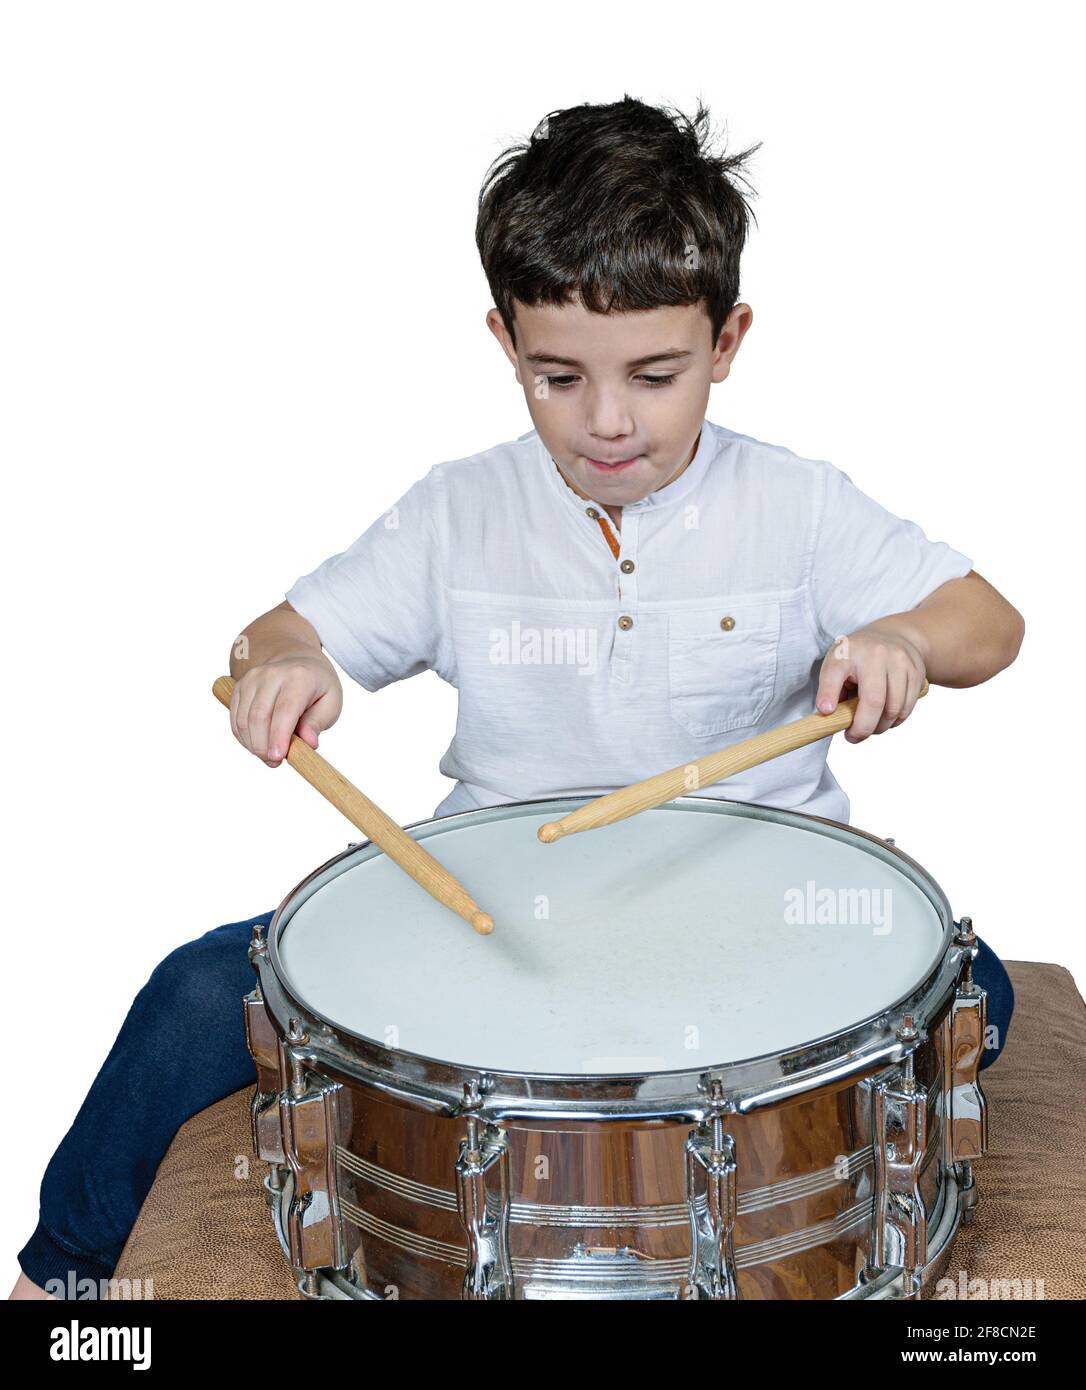 Das 7-jährige Kind konzentrierte sich und spielte Schlagzeug. Weißer Hintergrund. Stockfoto